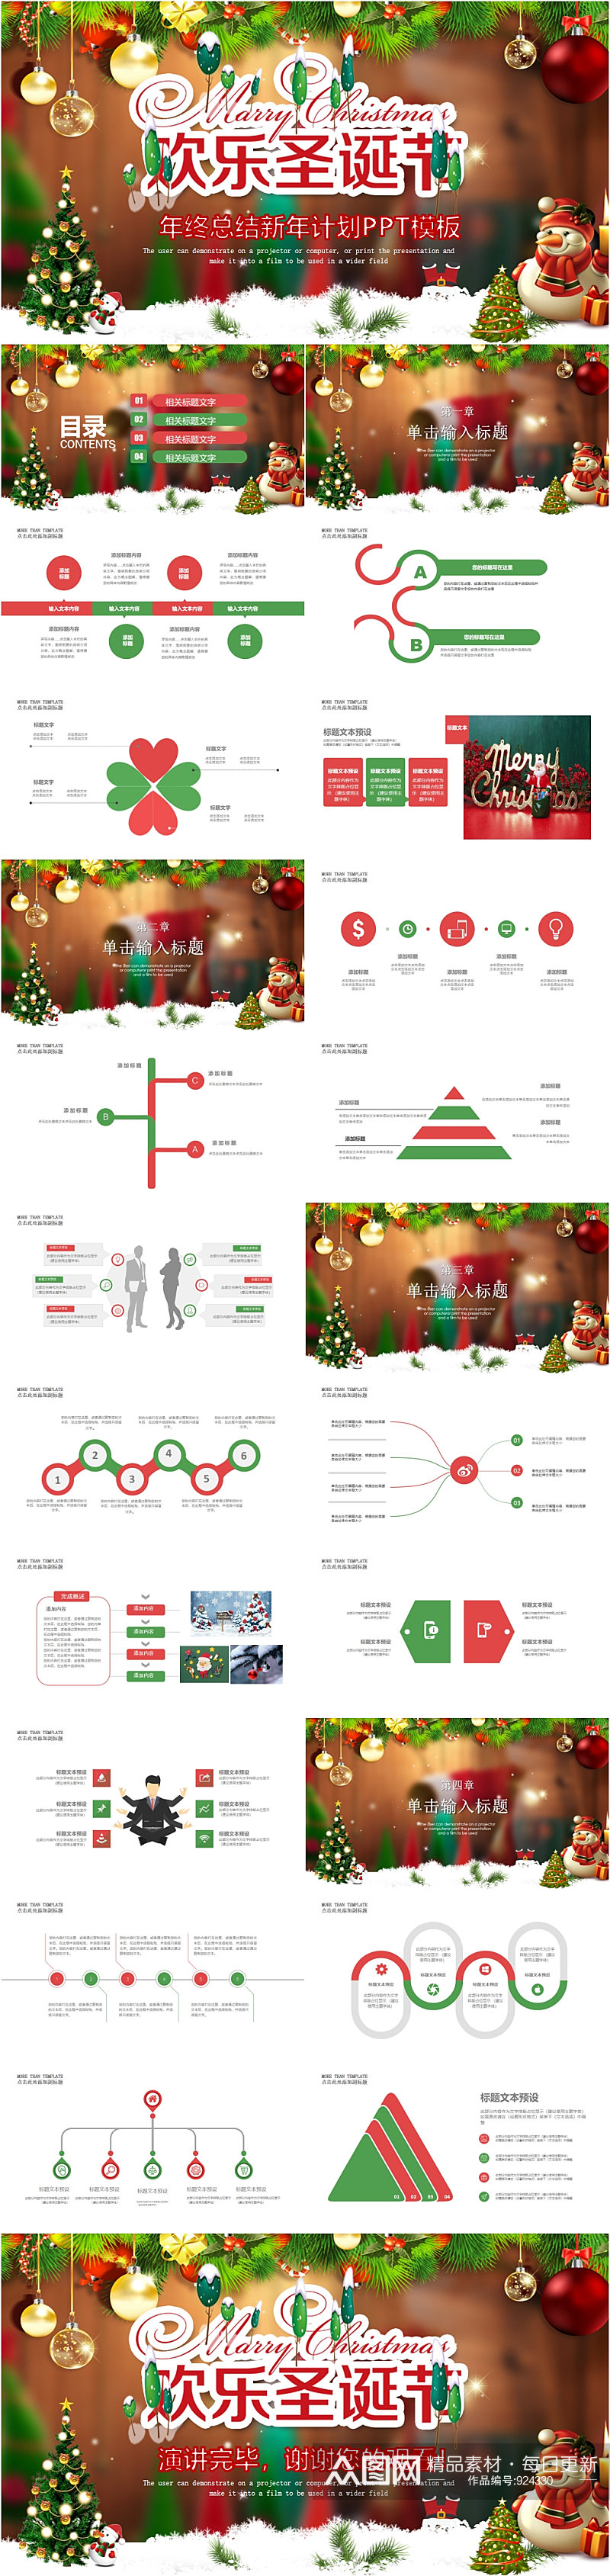 欢乐圣诞节年总结新年计划PPT模版素材